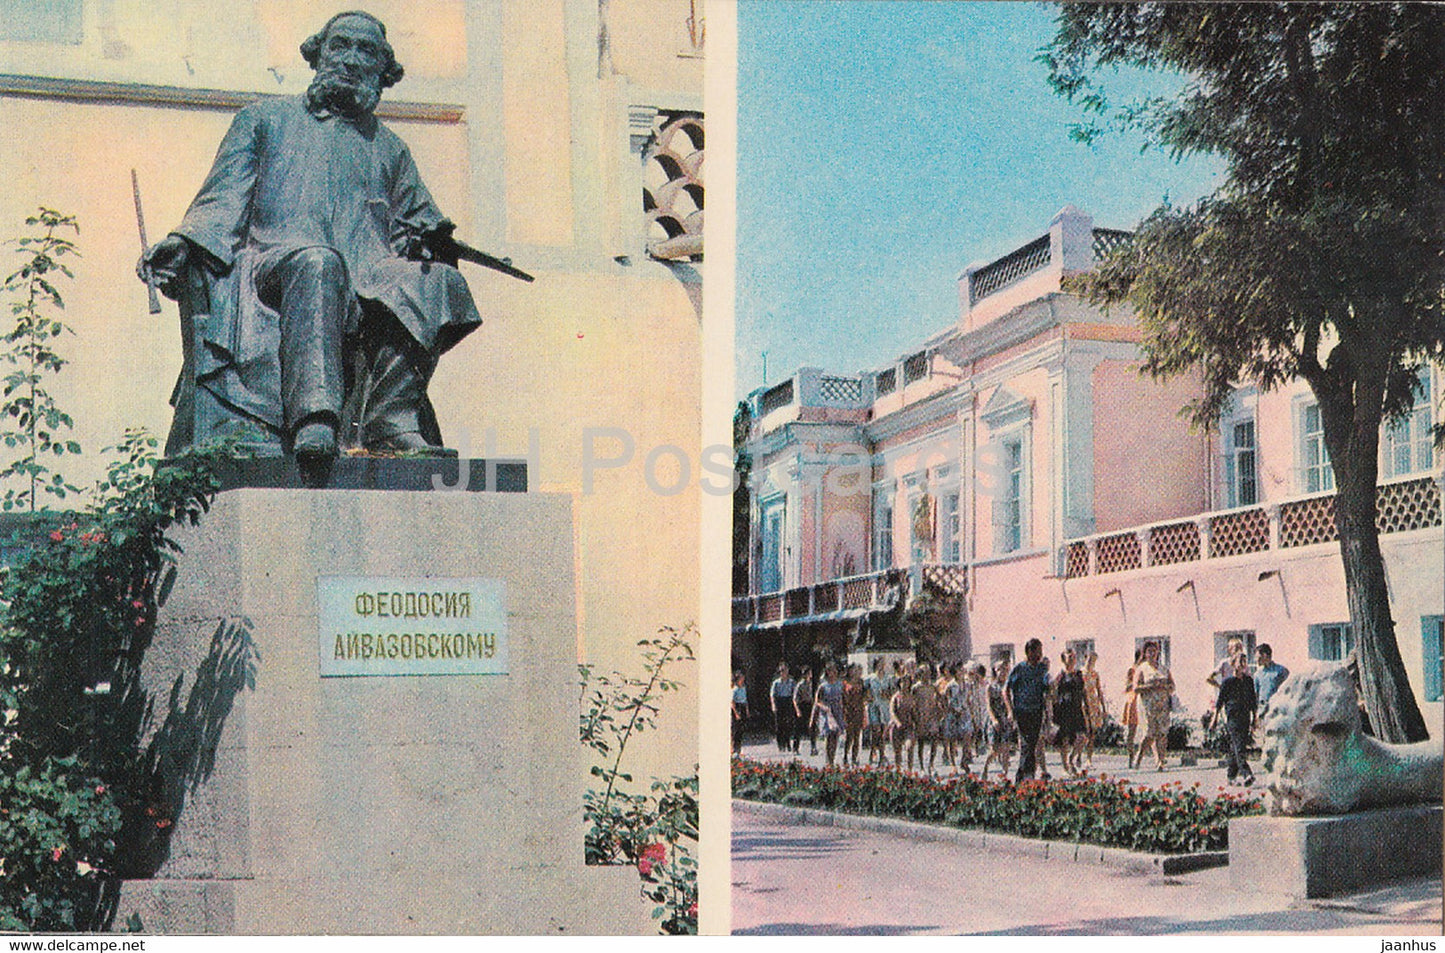 Feodosia - monument to Russian artist Ivan Aivazovsky - Art Gallery - Crimea - 1974 - Ukraine USSR - unused - JH Postcards